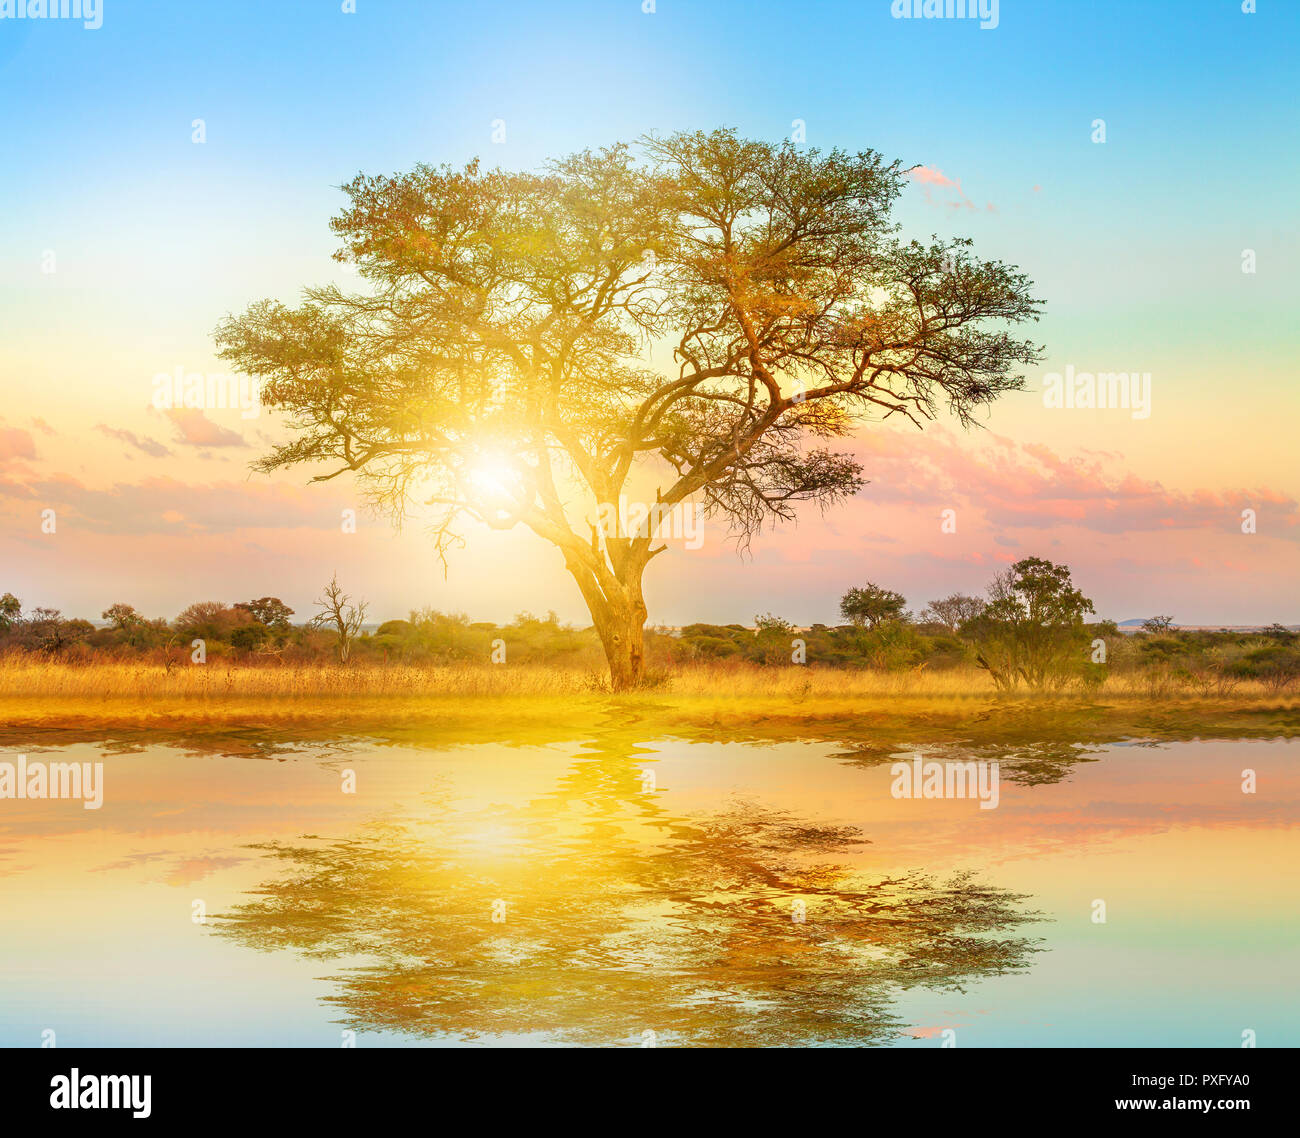 Afrikanischen Baum bei Sonnenaufgang auf einem Teich wider. Serengeti Wildlife Area in Tansania, Ostafrika. Afrika Safari Szene in der Savanne Landschaft. Stockfoto